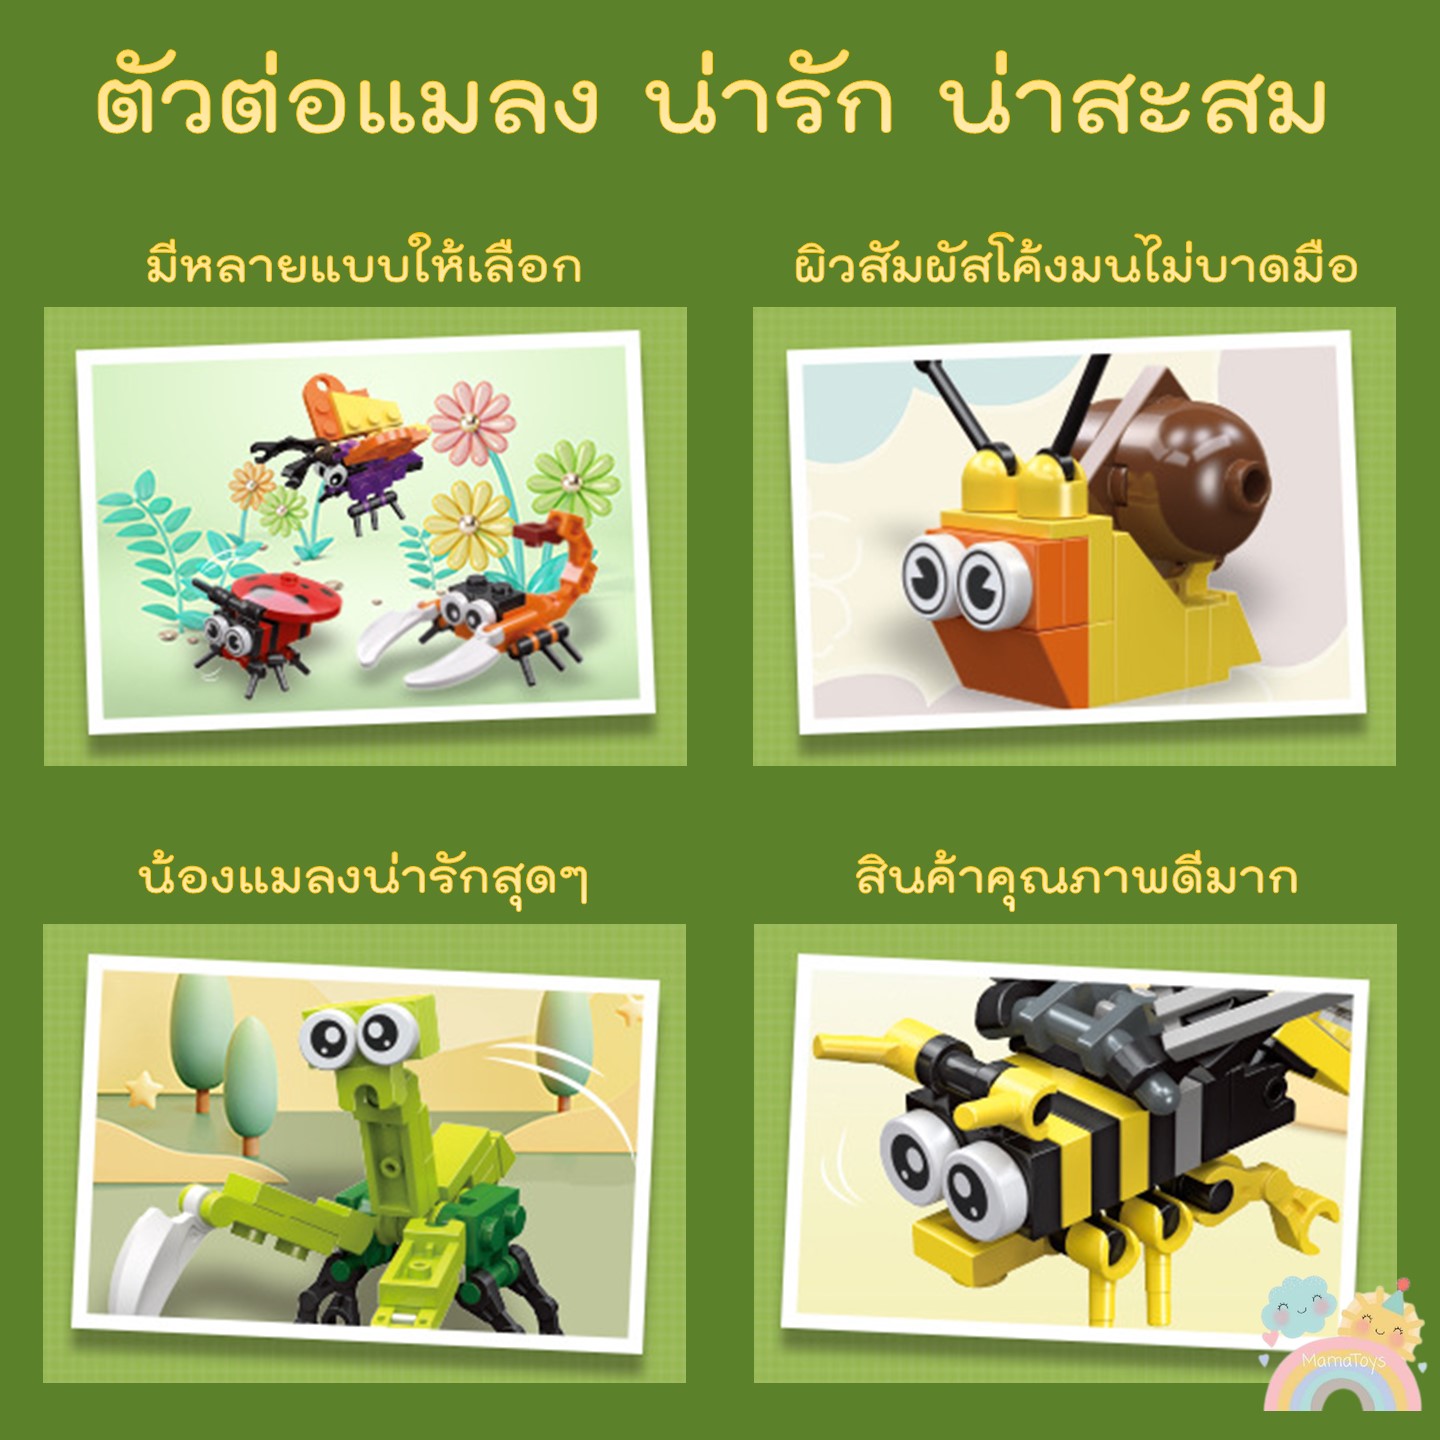 บล็อคและของเล่นตัวต่อ (COD) ตัวต่อแมลง สินค้าพร้อมส่งจากไทย ช่วยเสริมสร้างพัฒนาการ สําหรับเด็ก มีหลายแบบให้เลือก เลโก้แมลง